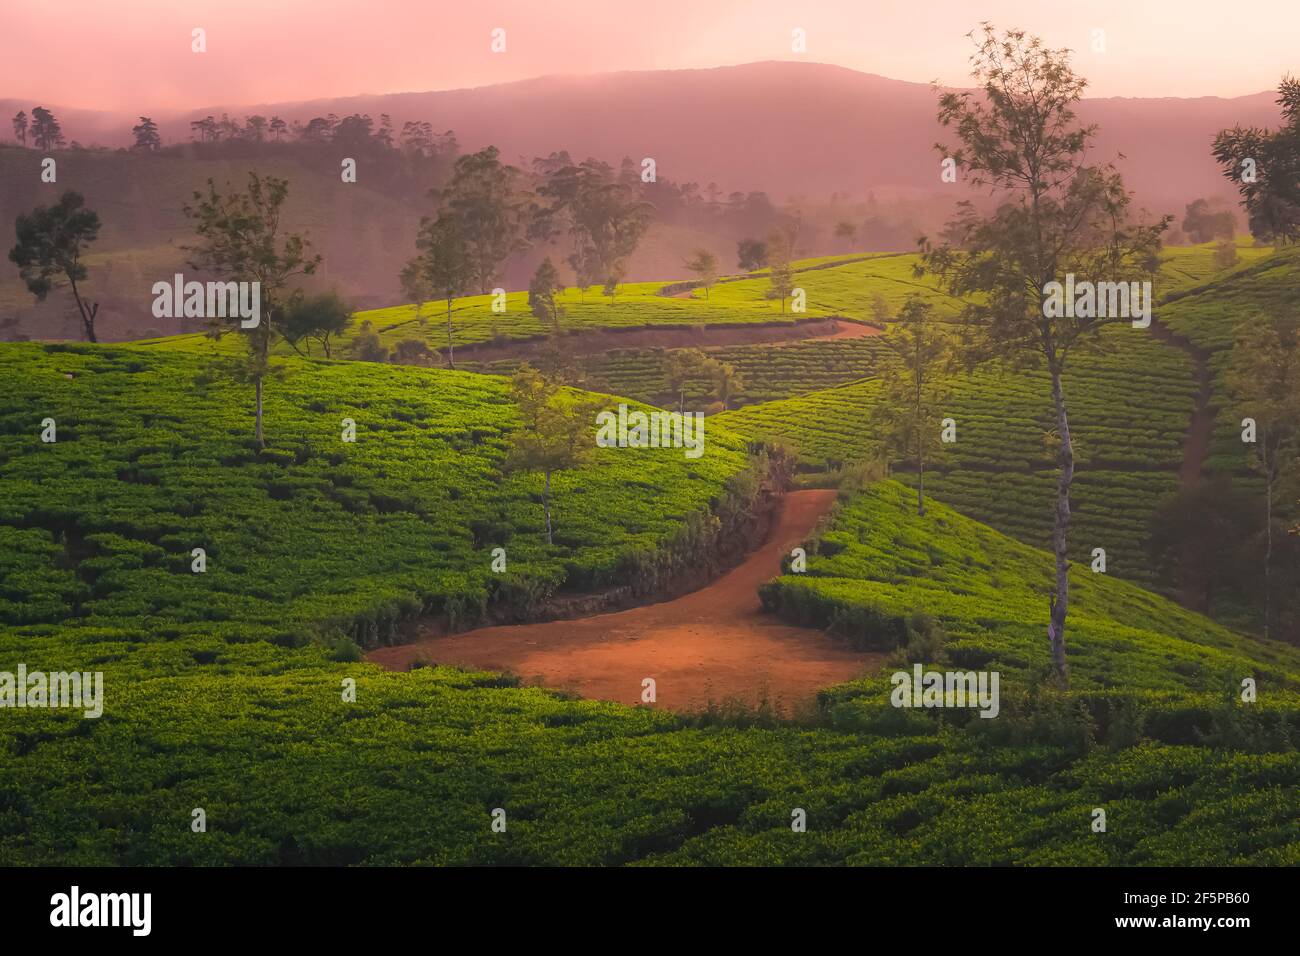 Landschaft Landschaft Blick auf Sri Lanka Hügelland, und terrassenförmige Teeplantage in Nuwara Eliya Dorf, Sri Lanka mit goldenem dunstigen Licht bei Sonnenuntergang Stockfoto